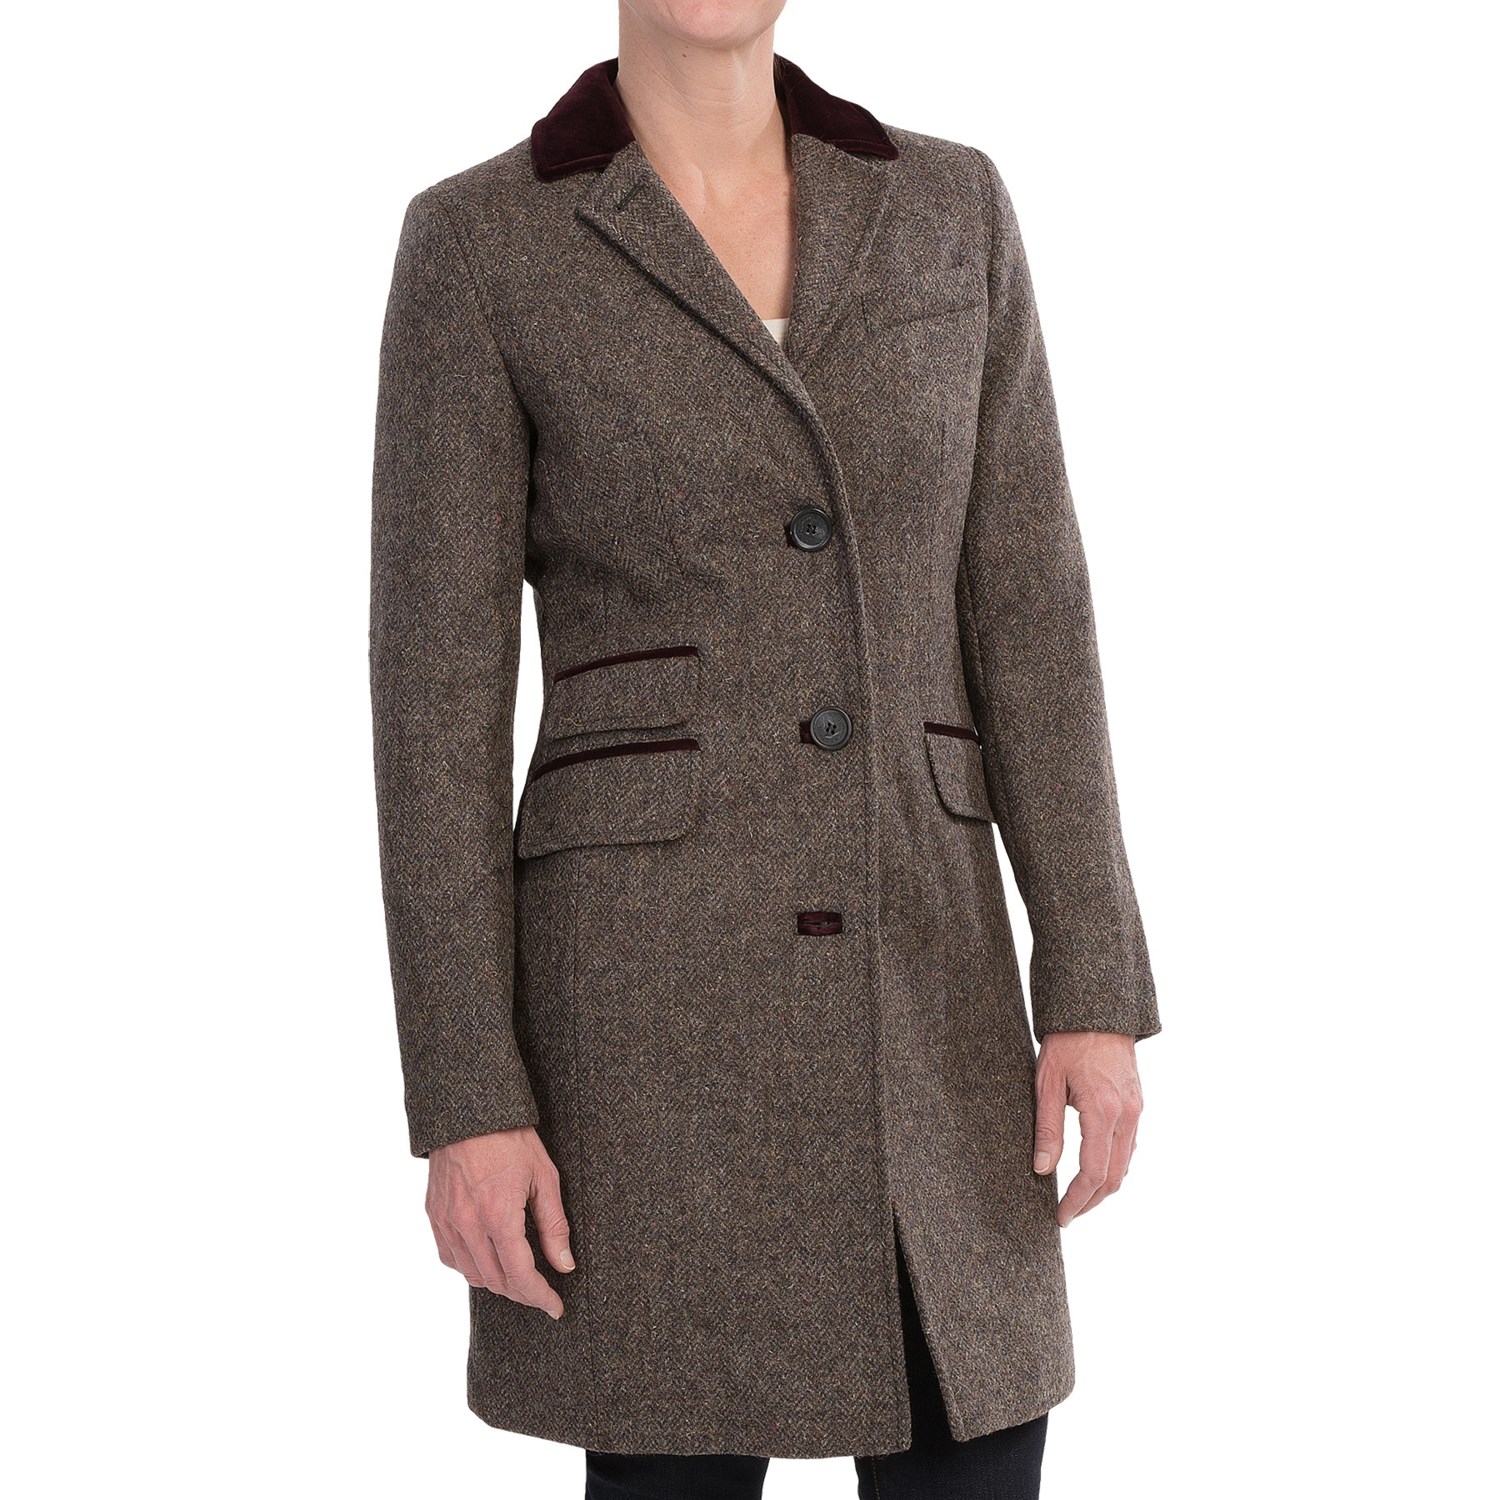 Barbour Stornoway Herringbone Wool Tweed Coat (For Women) Save 54